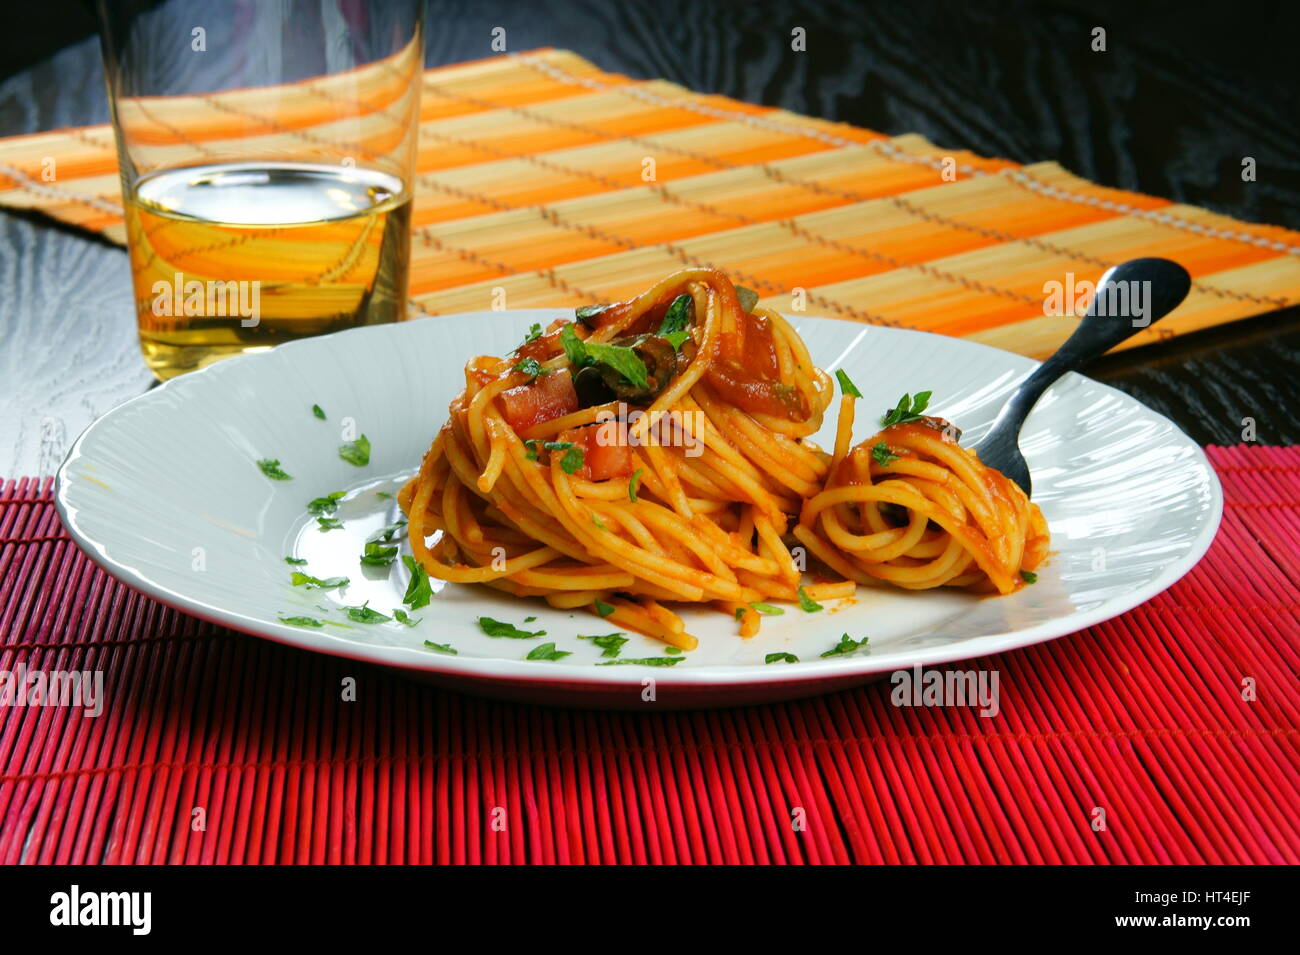 Spaghetti Puttanesca mit Gabel serviert in einer weißen Schale - italienisches Rezept mit Knoblauch, Olivenöl, Sardellen, Oliven, Tomaten, Petersilie, Kapern Stockfoto